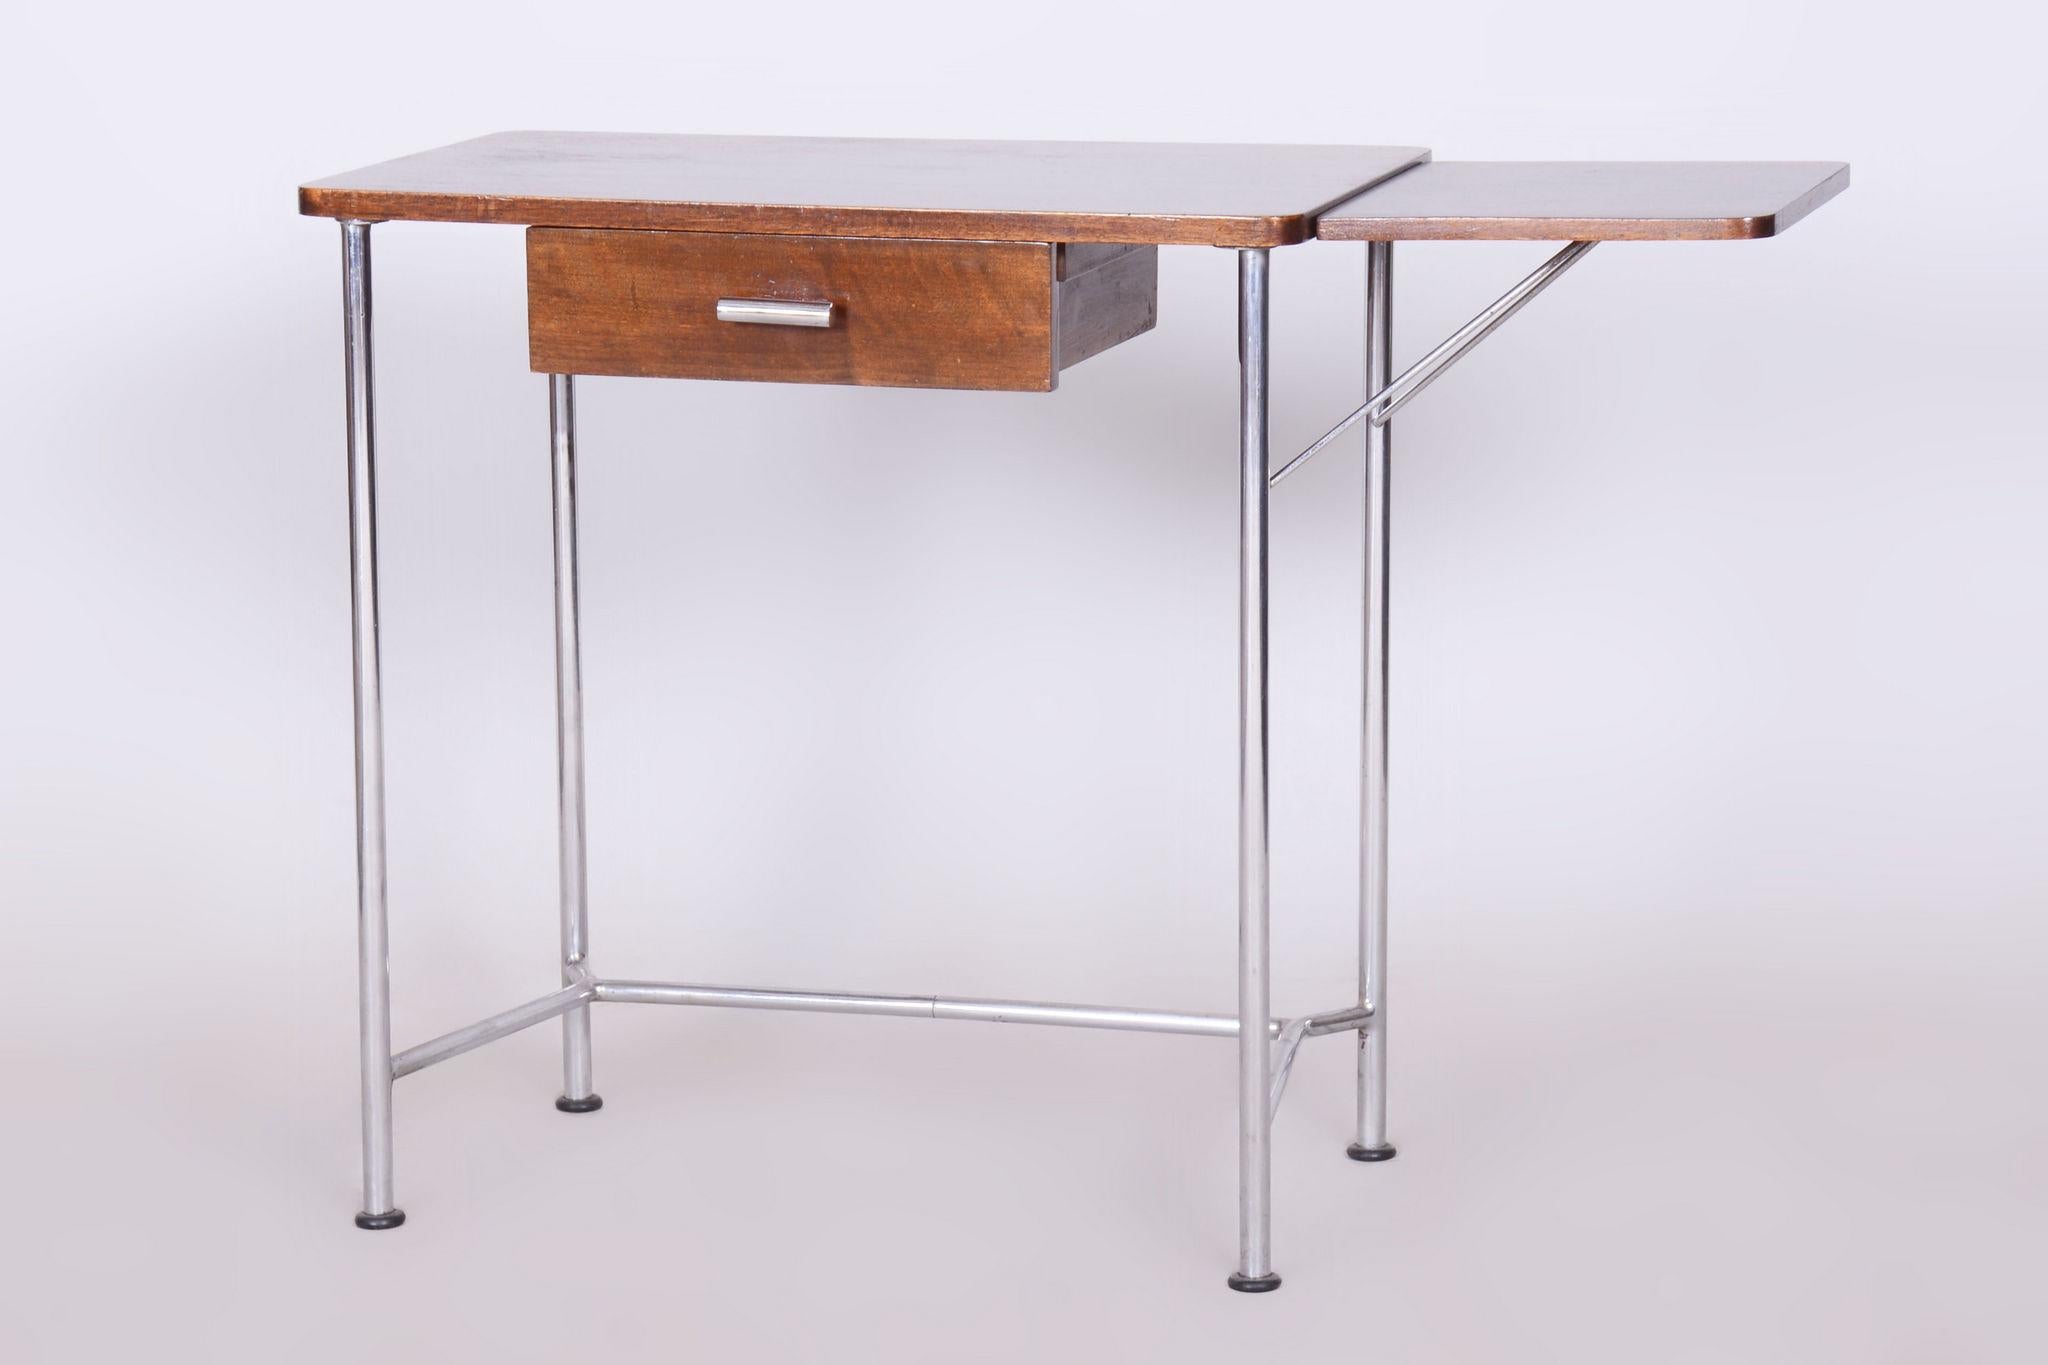 Restored Bauhaus Small Oak Writing Desk, Mücke Melder, Chrome, Czechia, 1930s For Sale 5